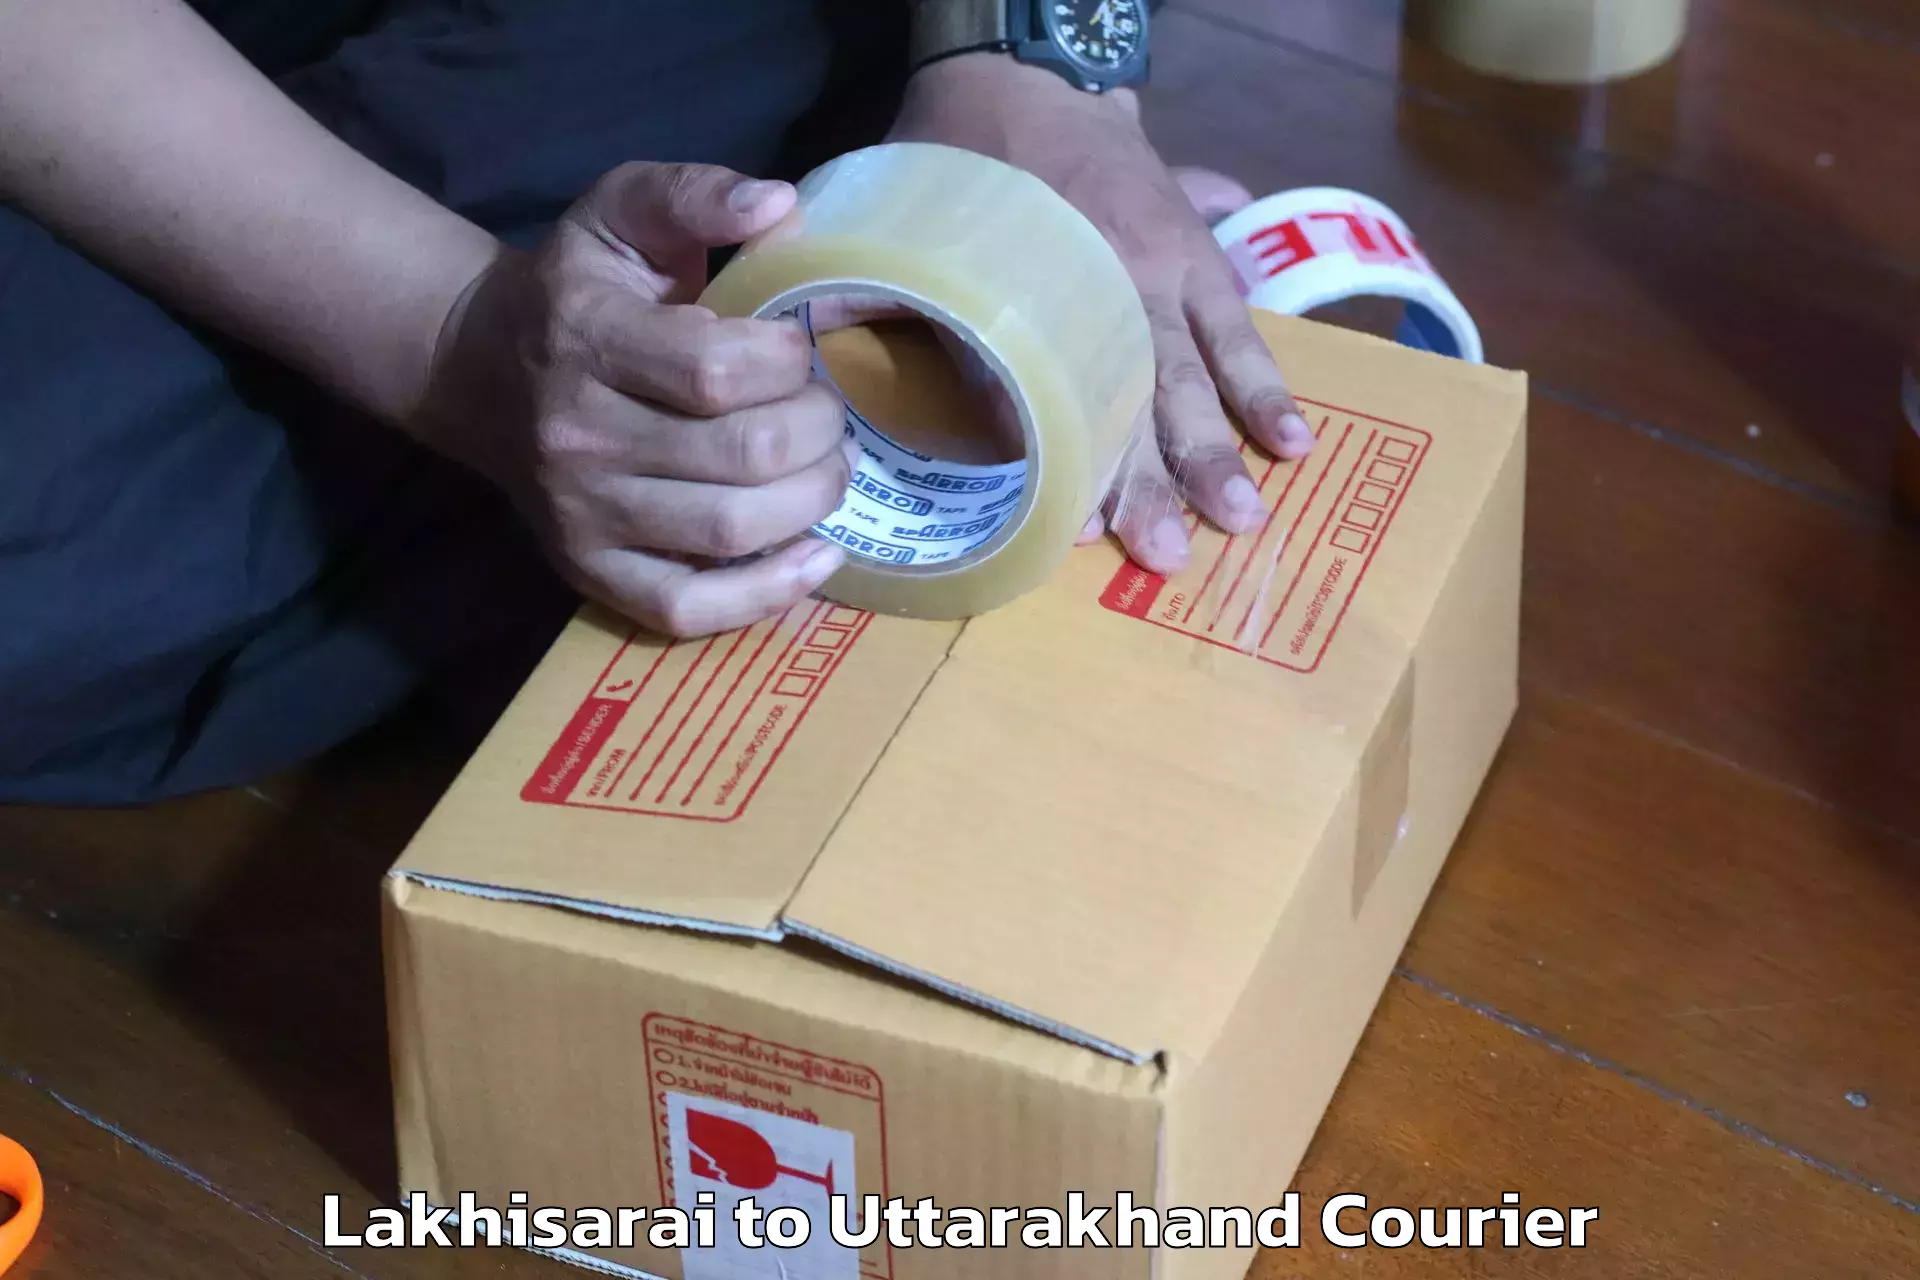 Efficient moving company Lakhisarai to Bhimtal